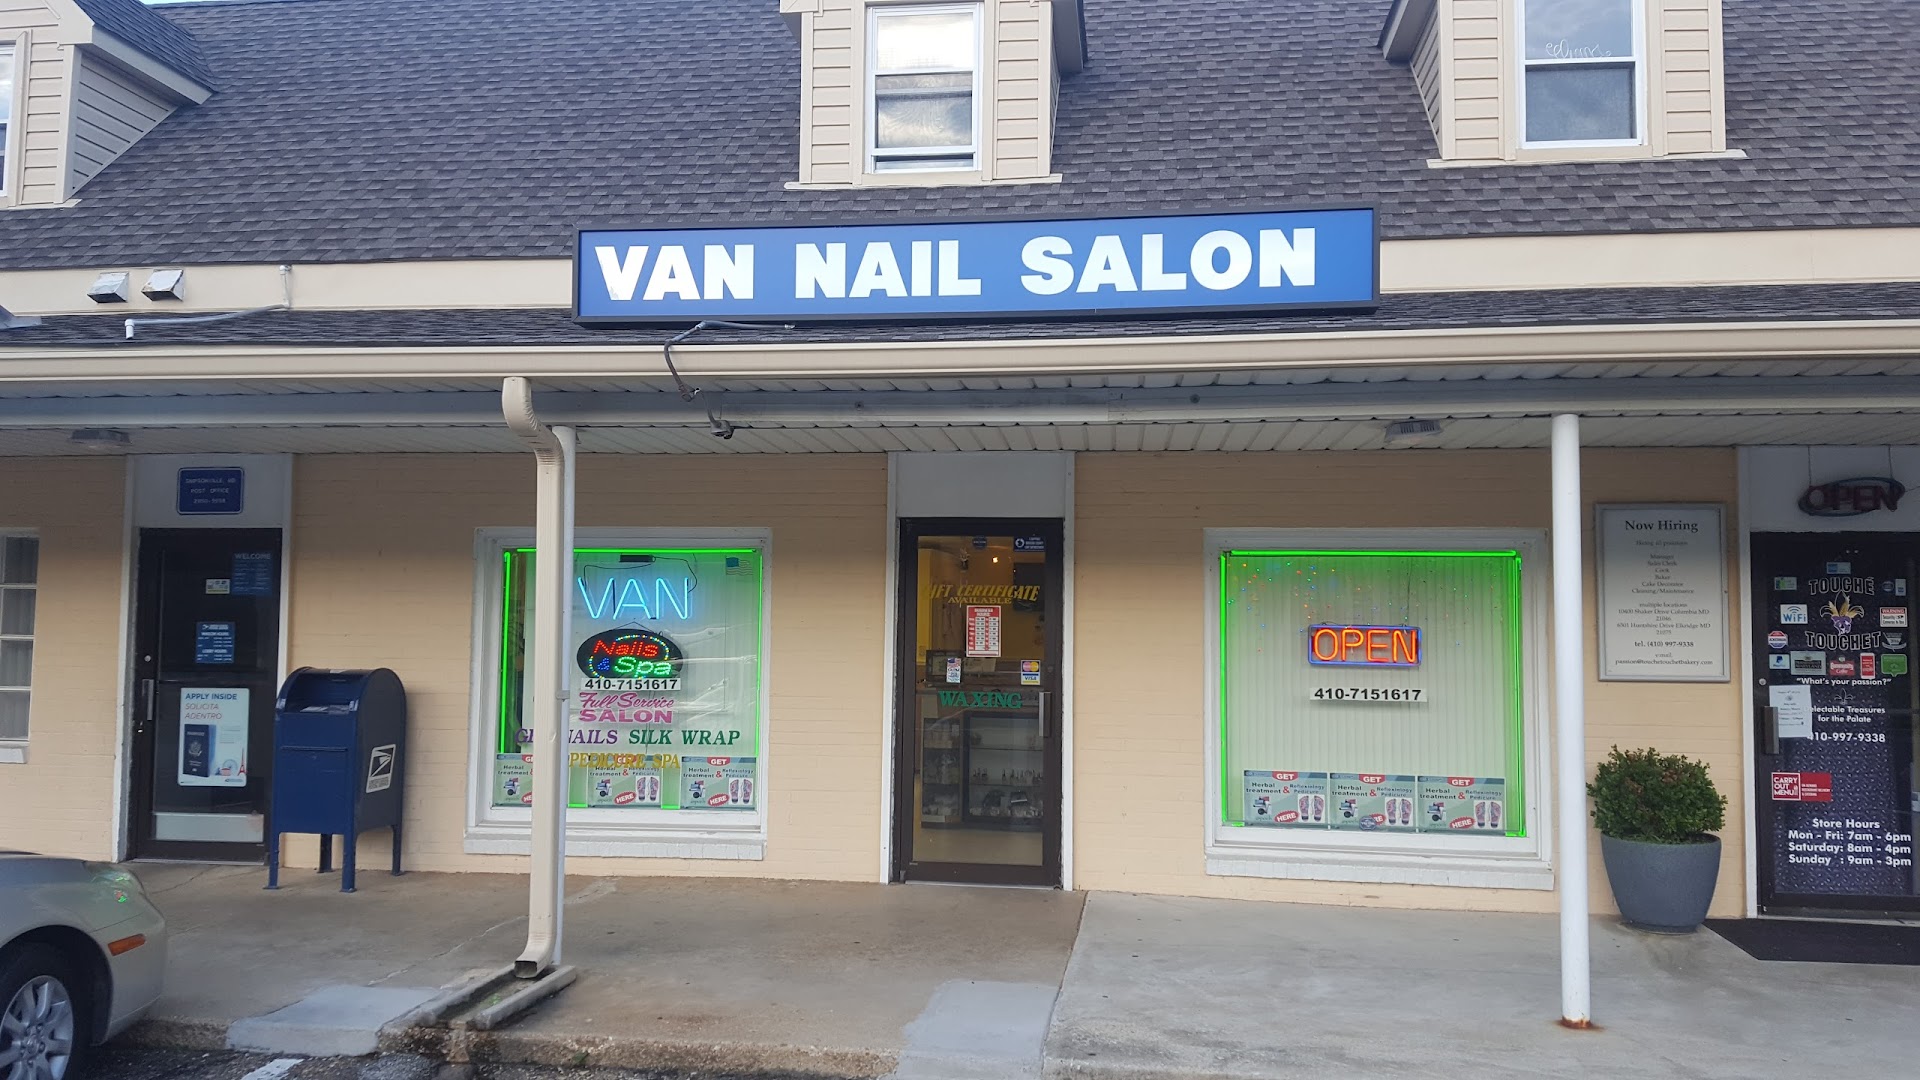 Van Nails Salon